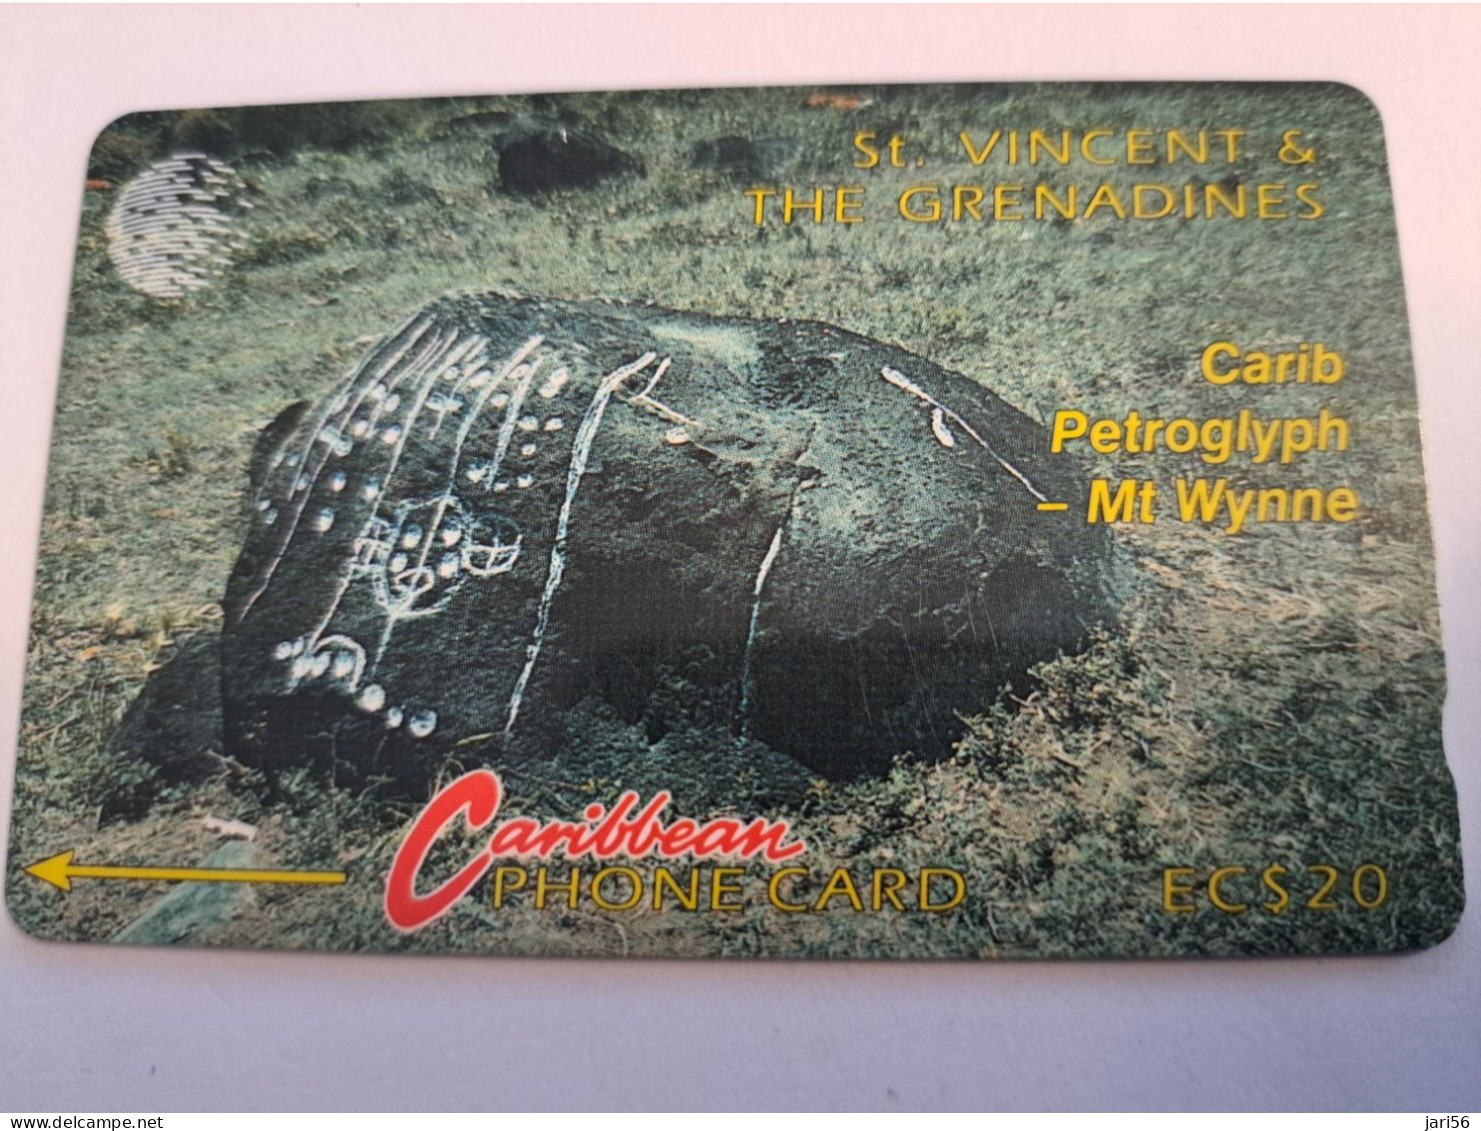 ST VINCENT & GRENADINES  GPT CARD   $ 20,-  5CSVB  CARIB PETROGLYPH     C&W    Fine Used  Card  **16052 ** - Saint-Vincent-et-les-Grenadines